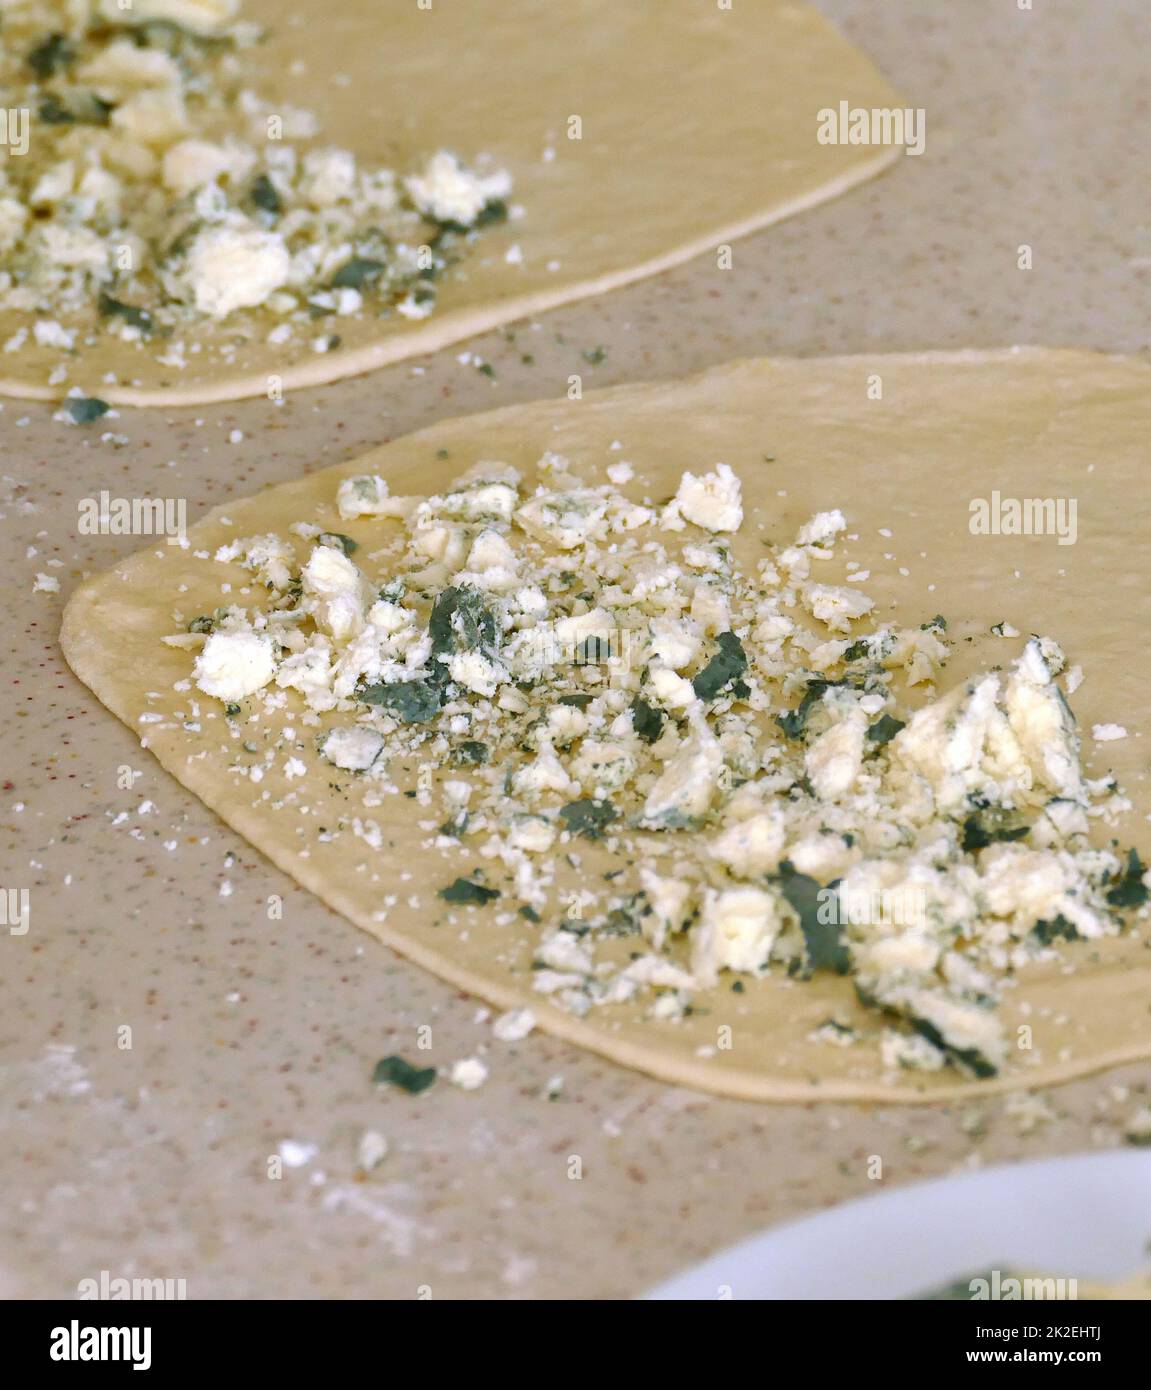 Formaggio ammuffito in un piatto, formaggio verde ammuffito Foto Stock